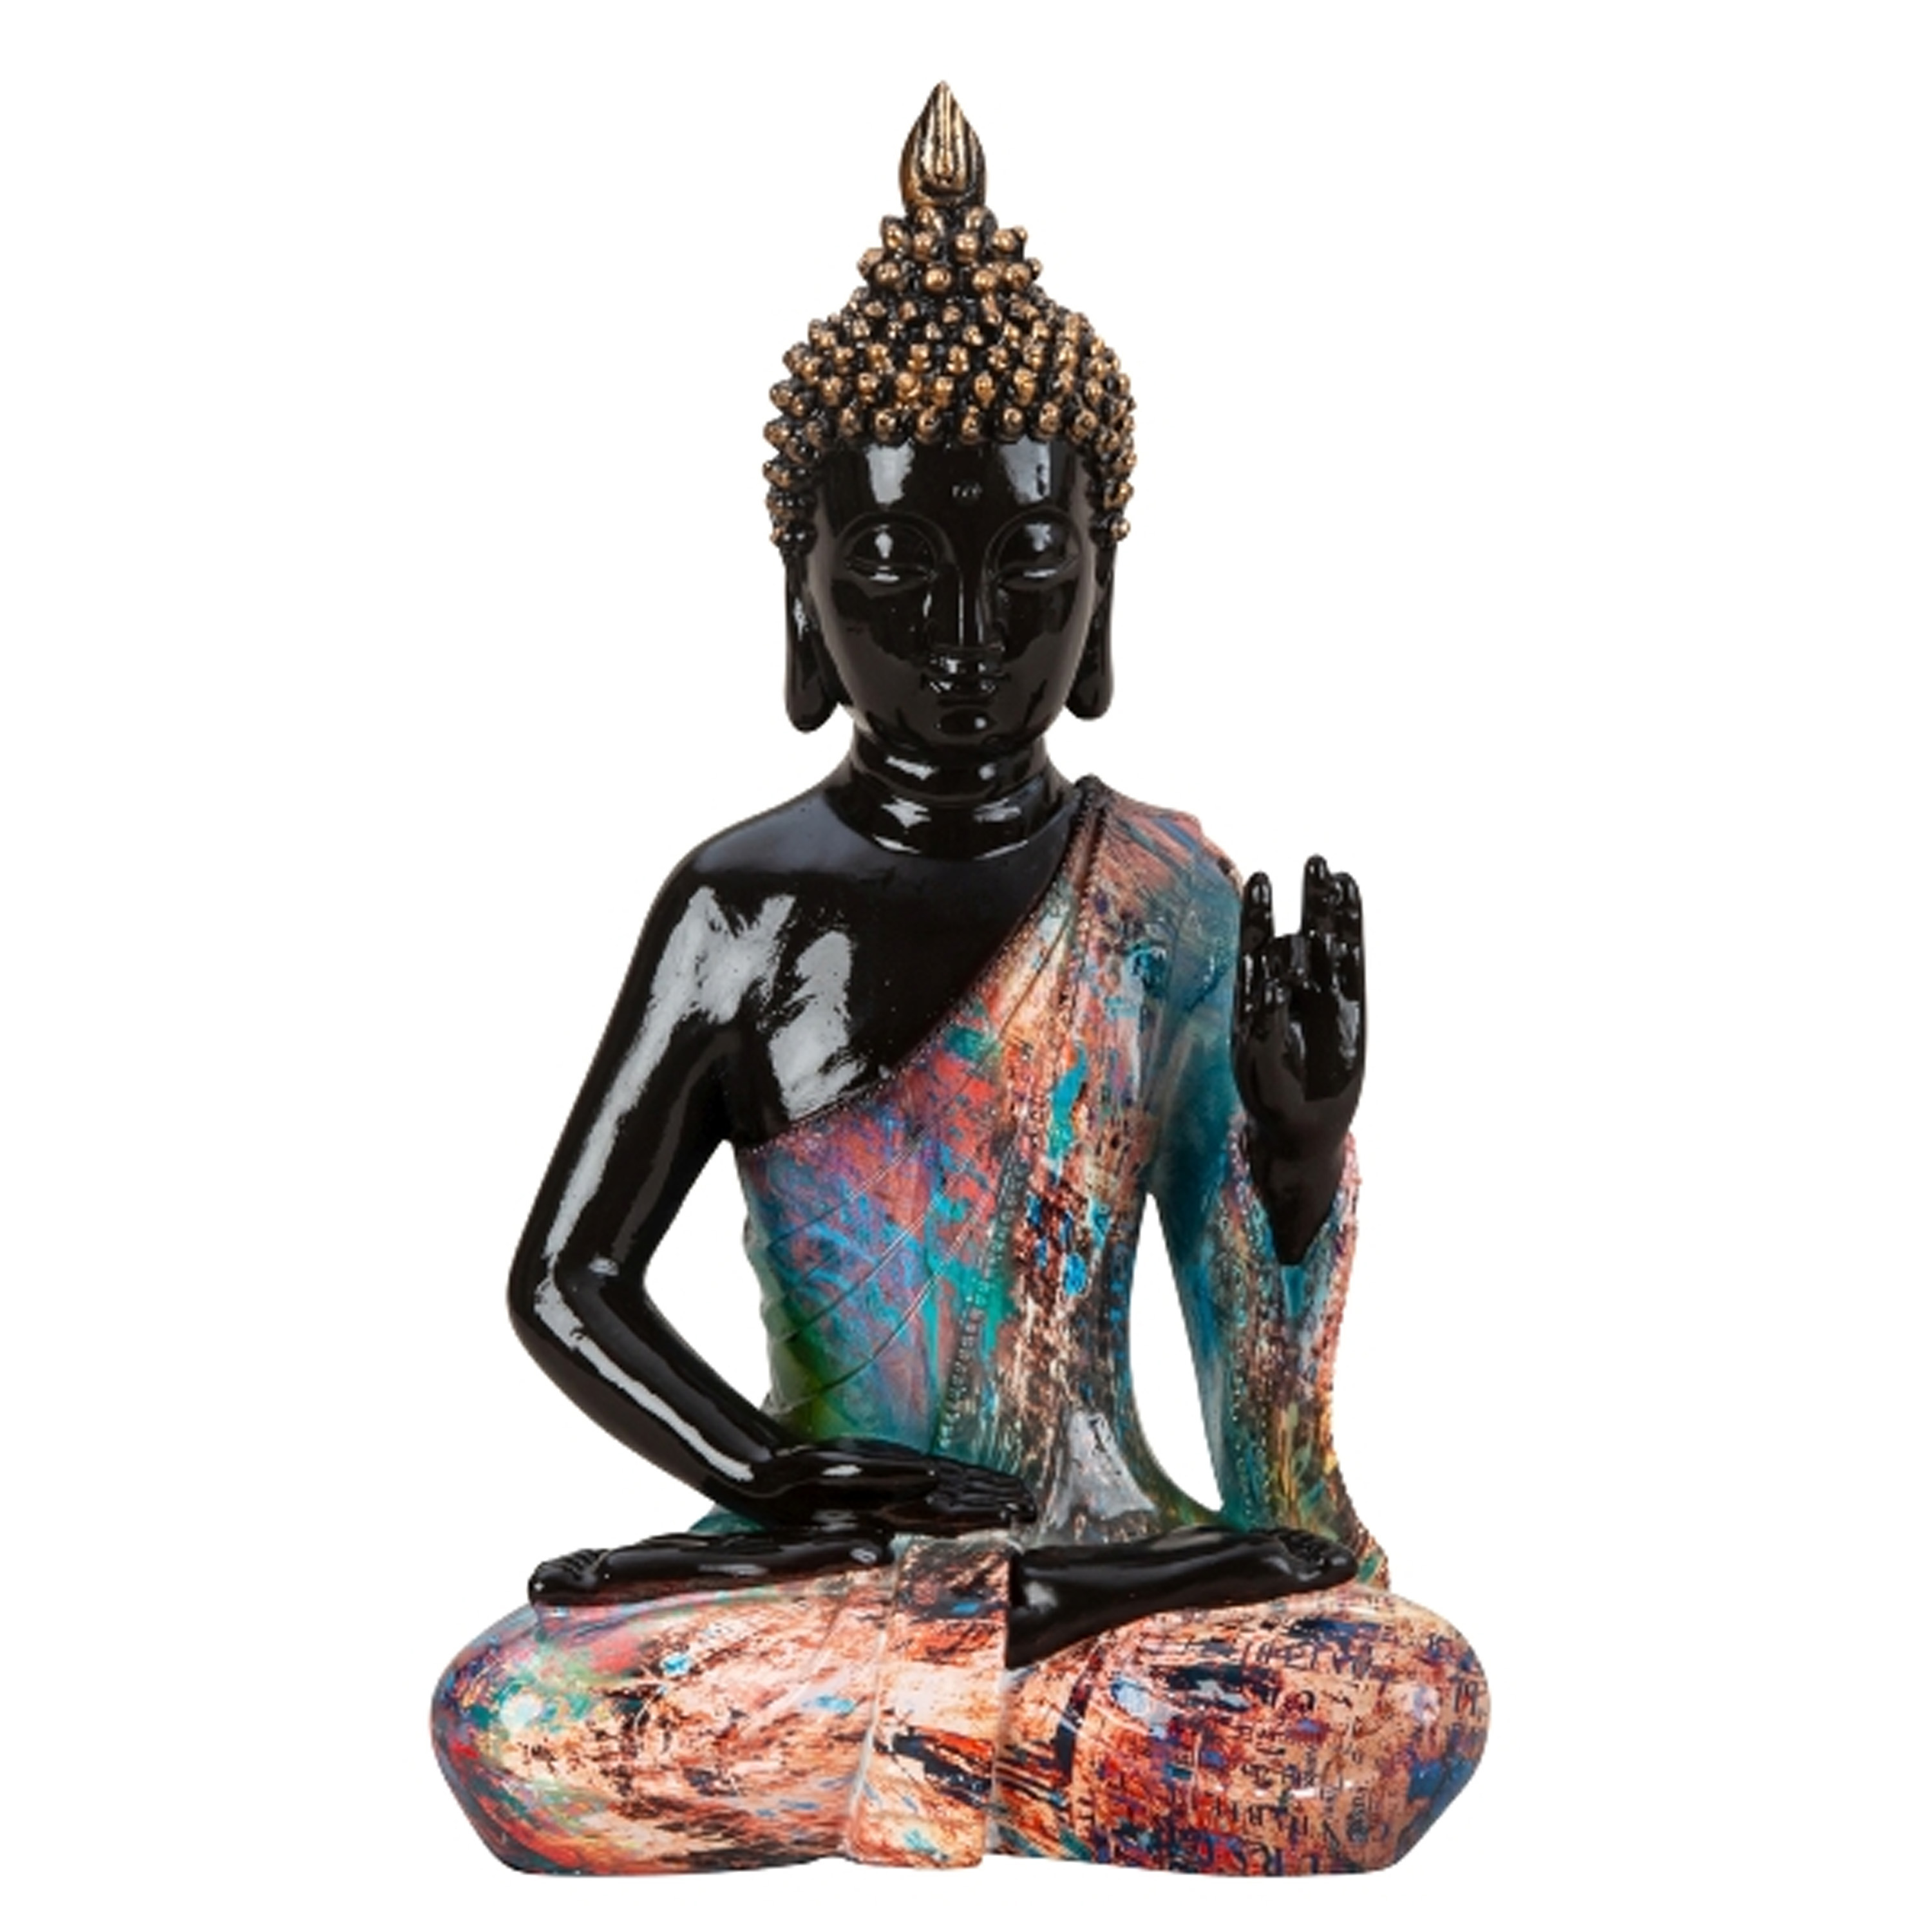 Merkloos Boeddha beeld Colorfull - binnen/buiten - kunststeen - zwart/kleurenmix - 18 x 31 cm -